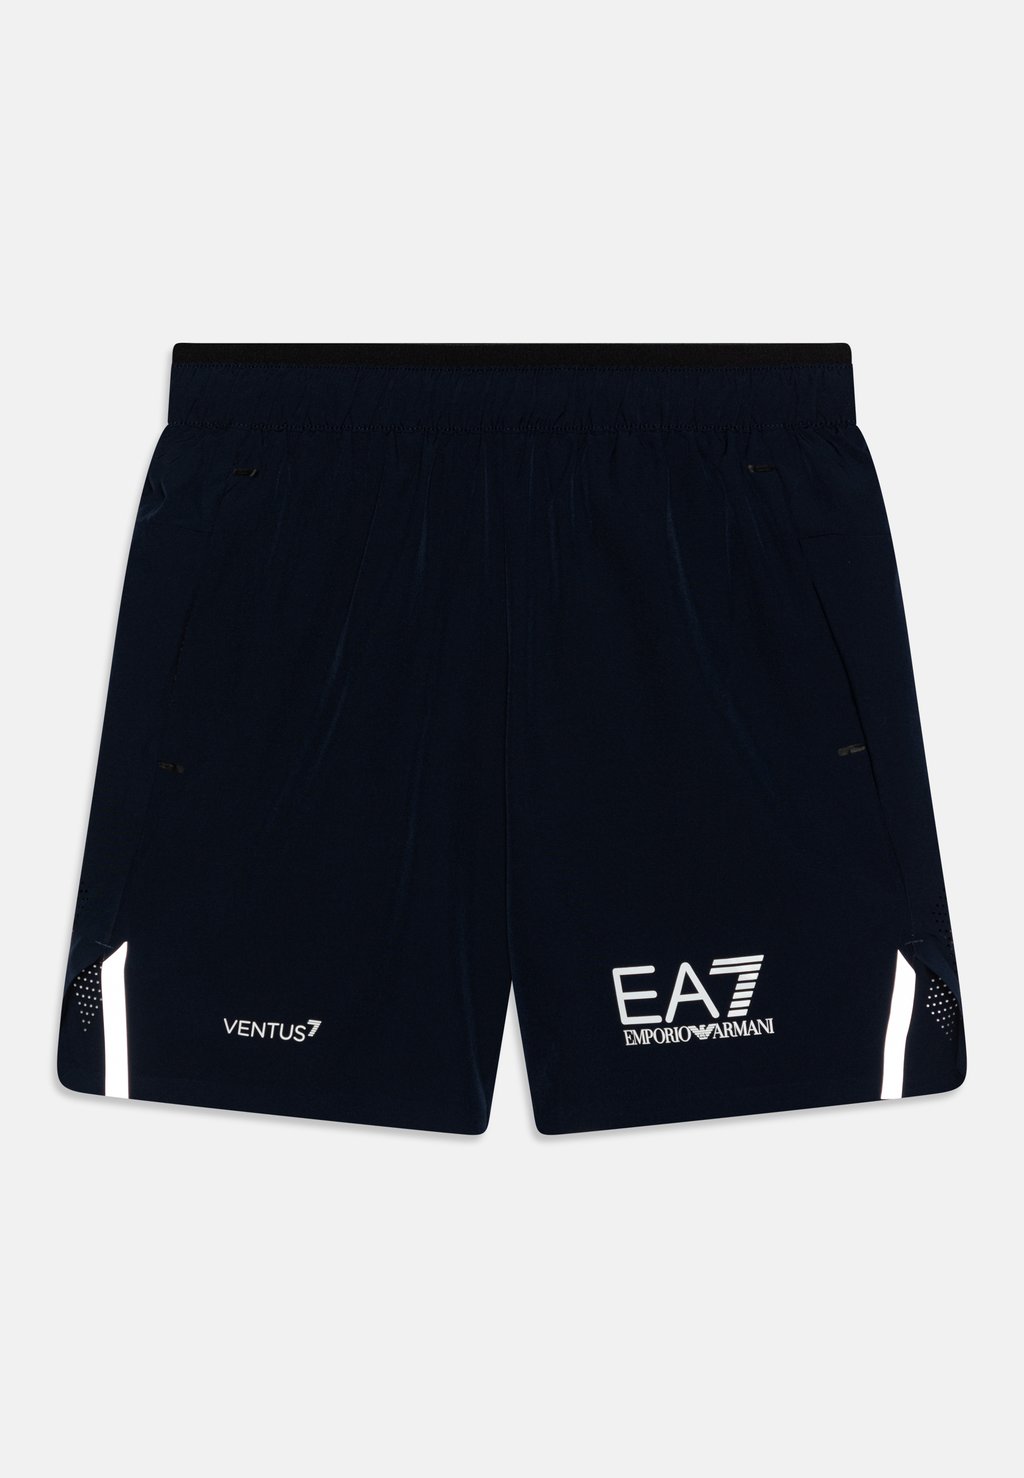 Спортивные шорты Unisex EA7 Emporio Armani, цвет navy blue спортивные шорты tennis pro shorts ea7 emporio armani цвет navy blue